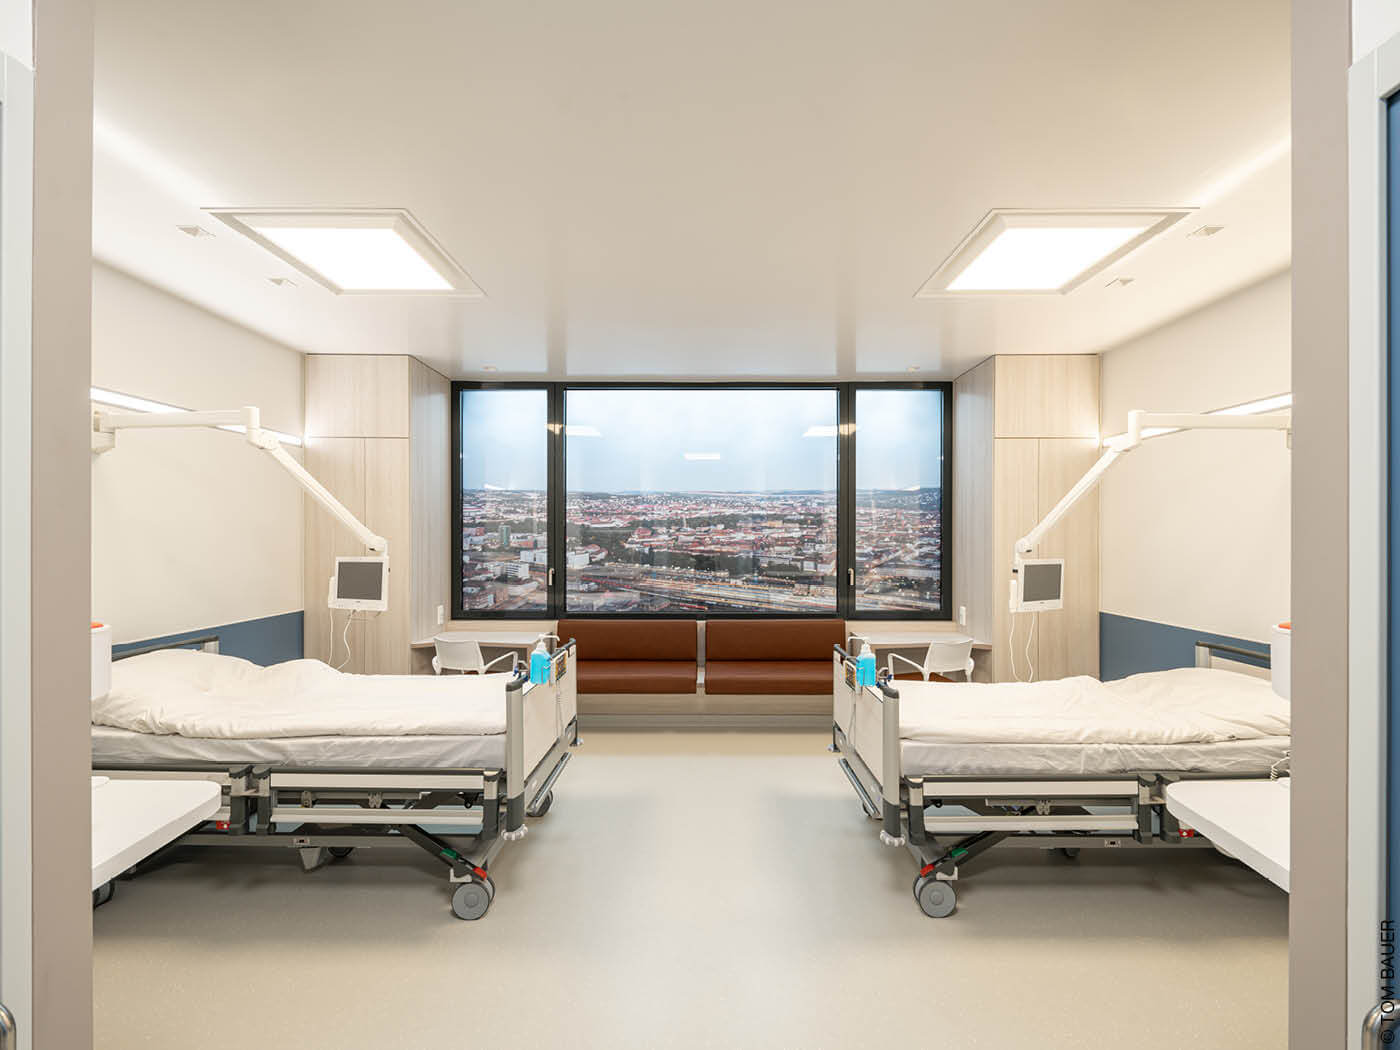 Zweibettzimmer in einem Krankenhaus